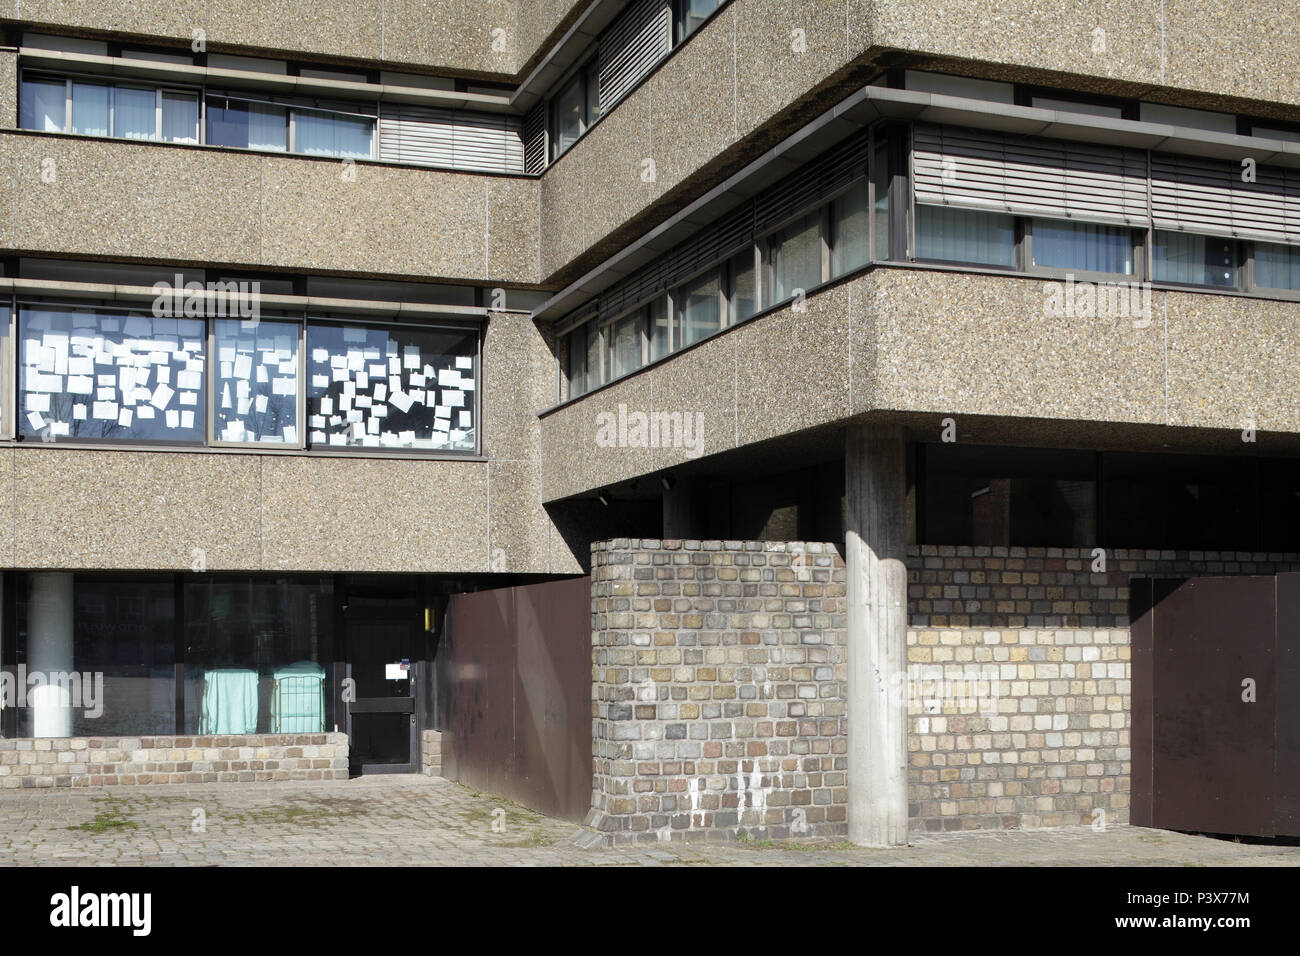 Hambourg, Allemagne, immeuble de bureaux avec façade en béton lavé centre de Hambourg Banque D'Images